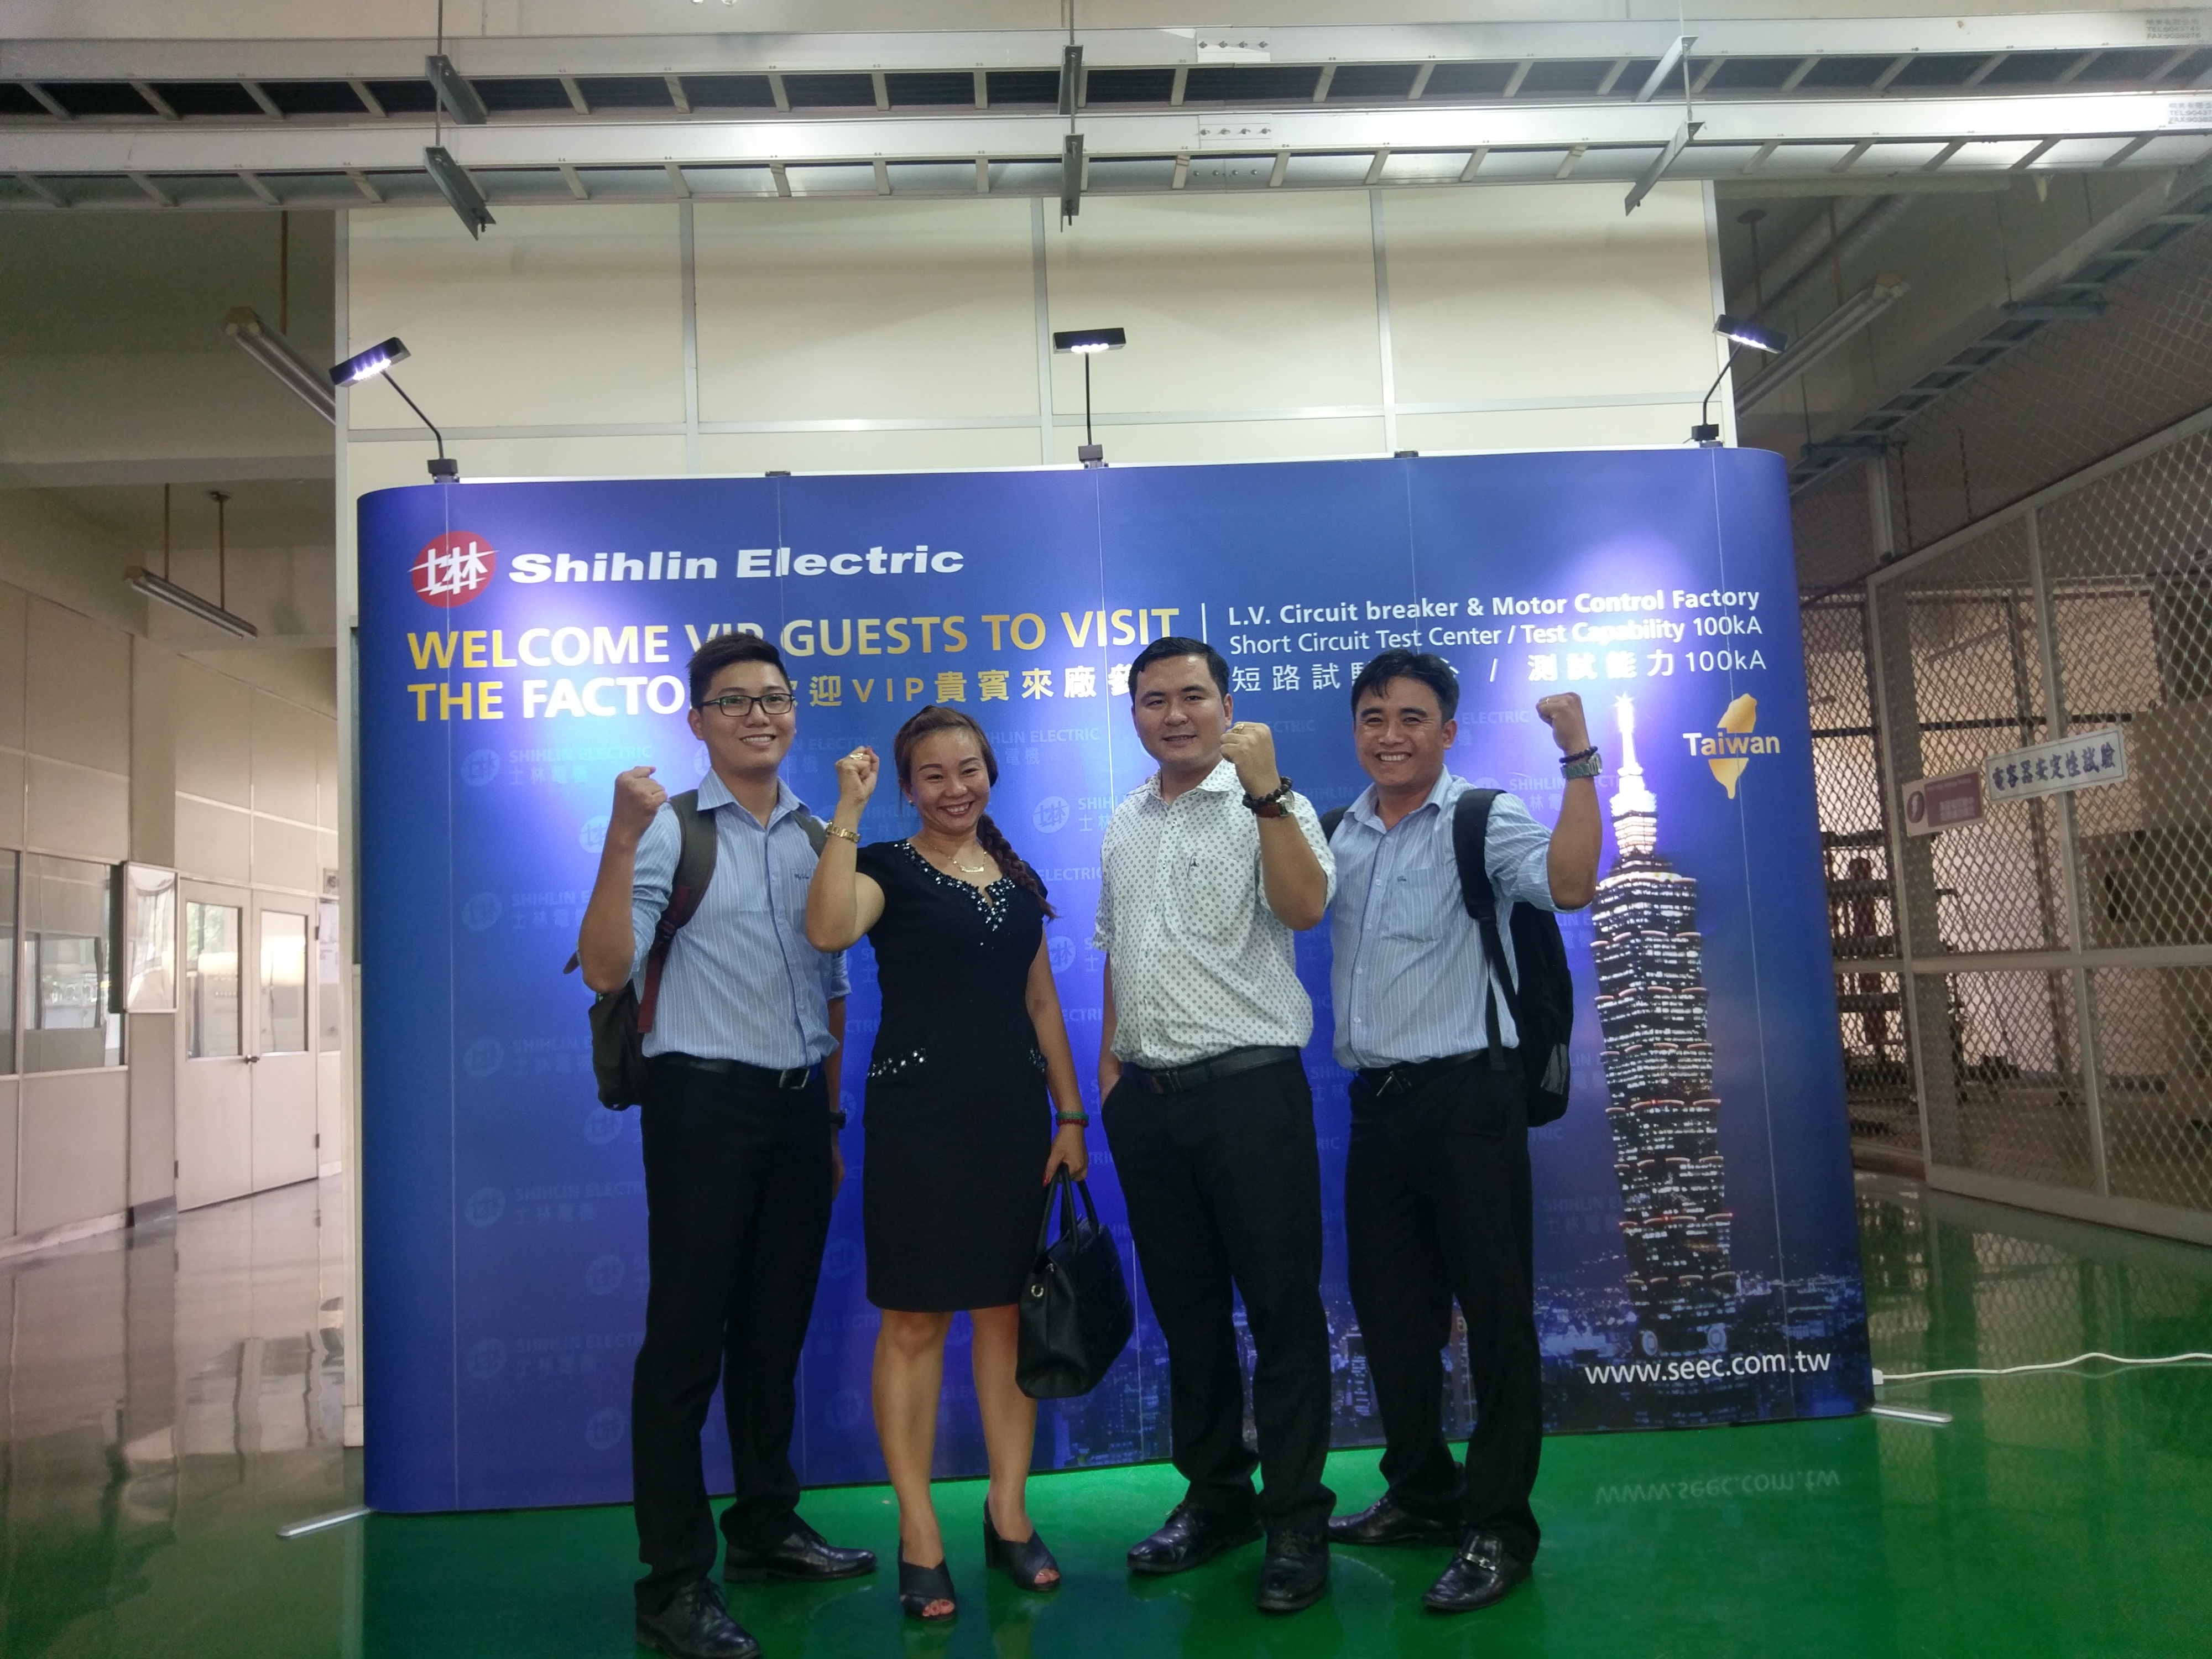 I clienti del Vietnam visitano Shihlin Electric